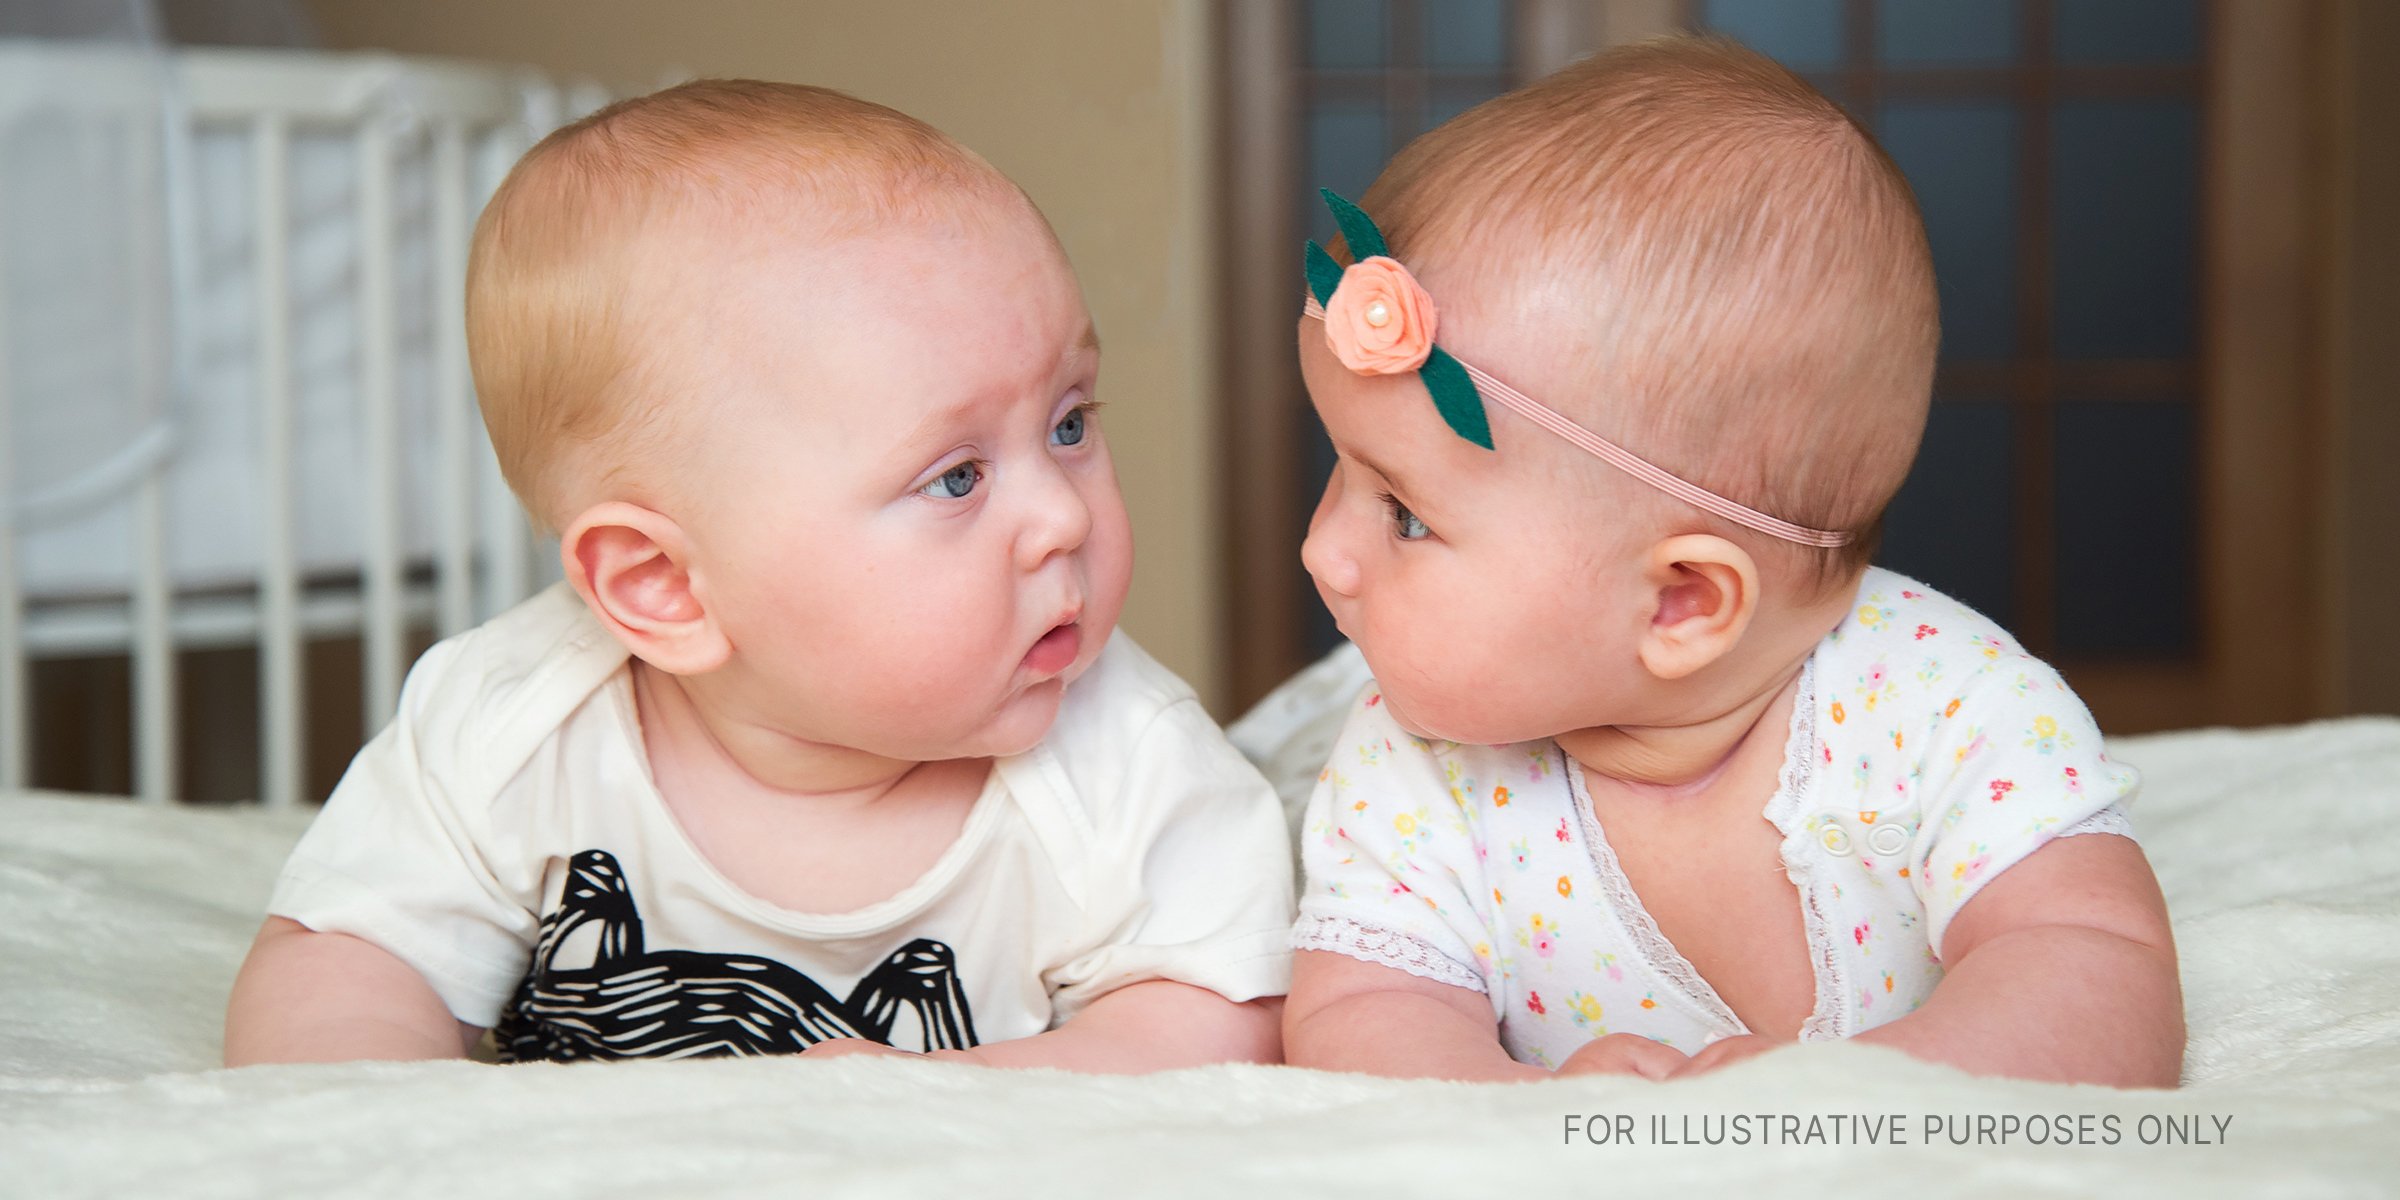 Dos bebés en una cama. | Fuente: Shutterstock